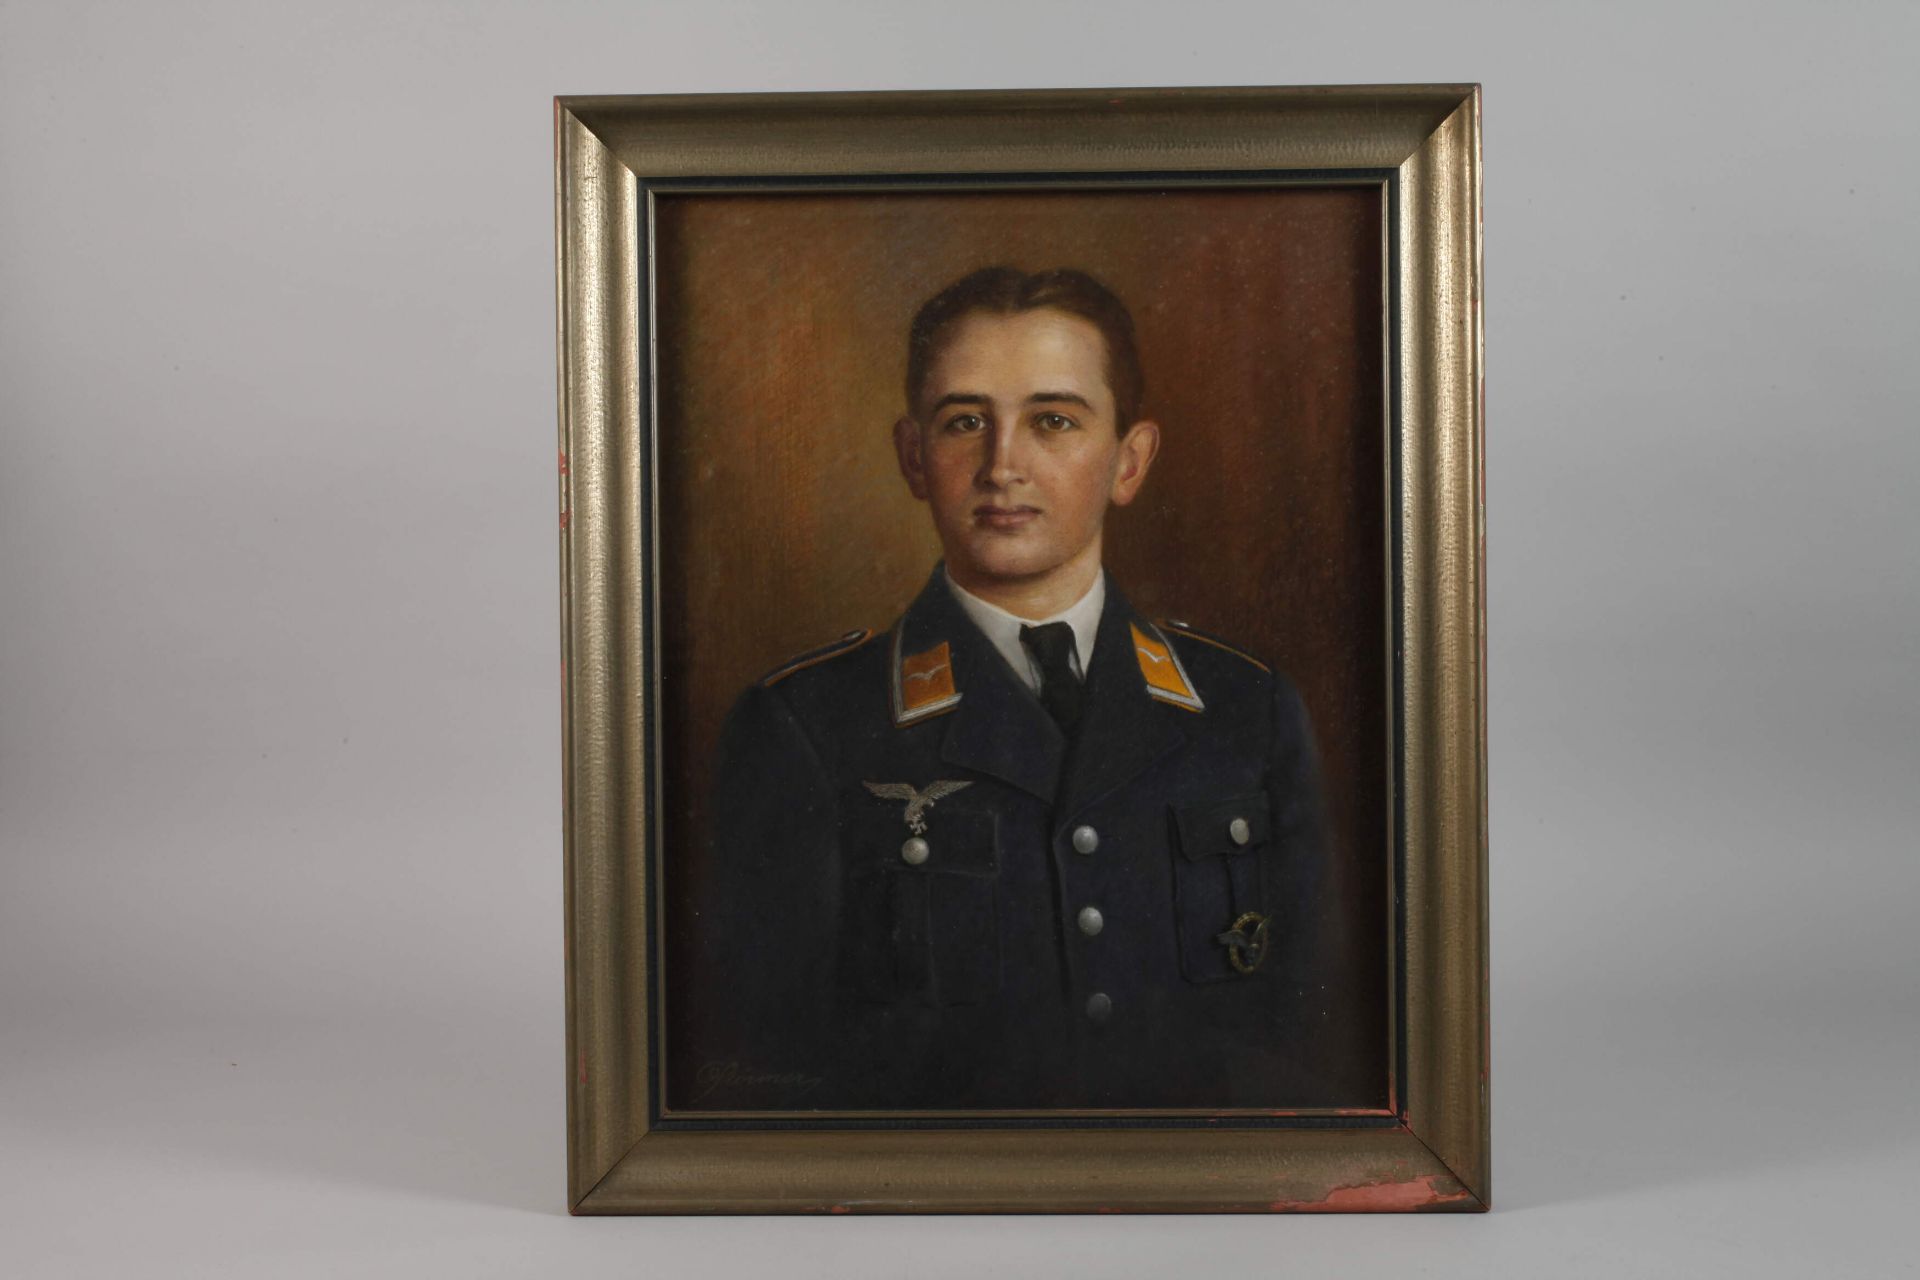 Soldier portrait 2nd World War - Image 2 of 3